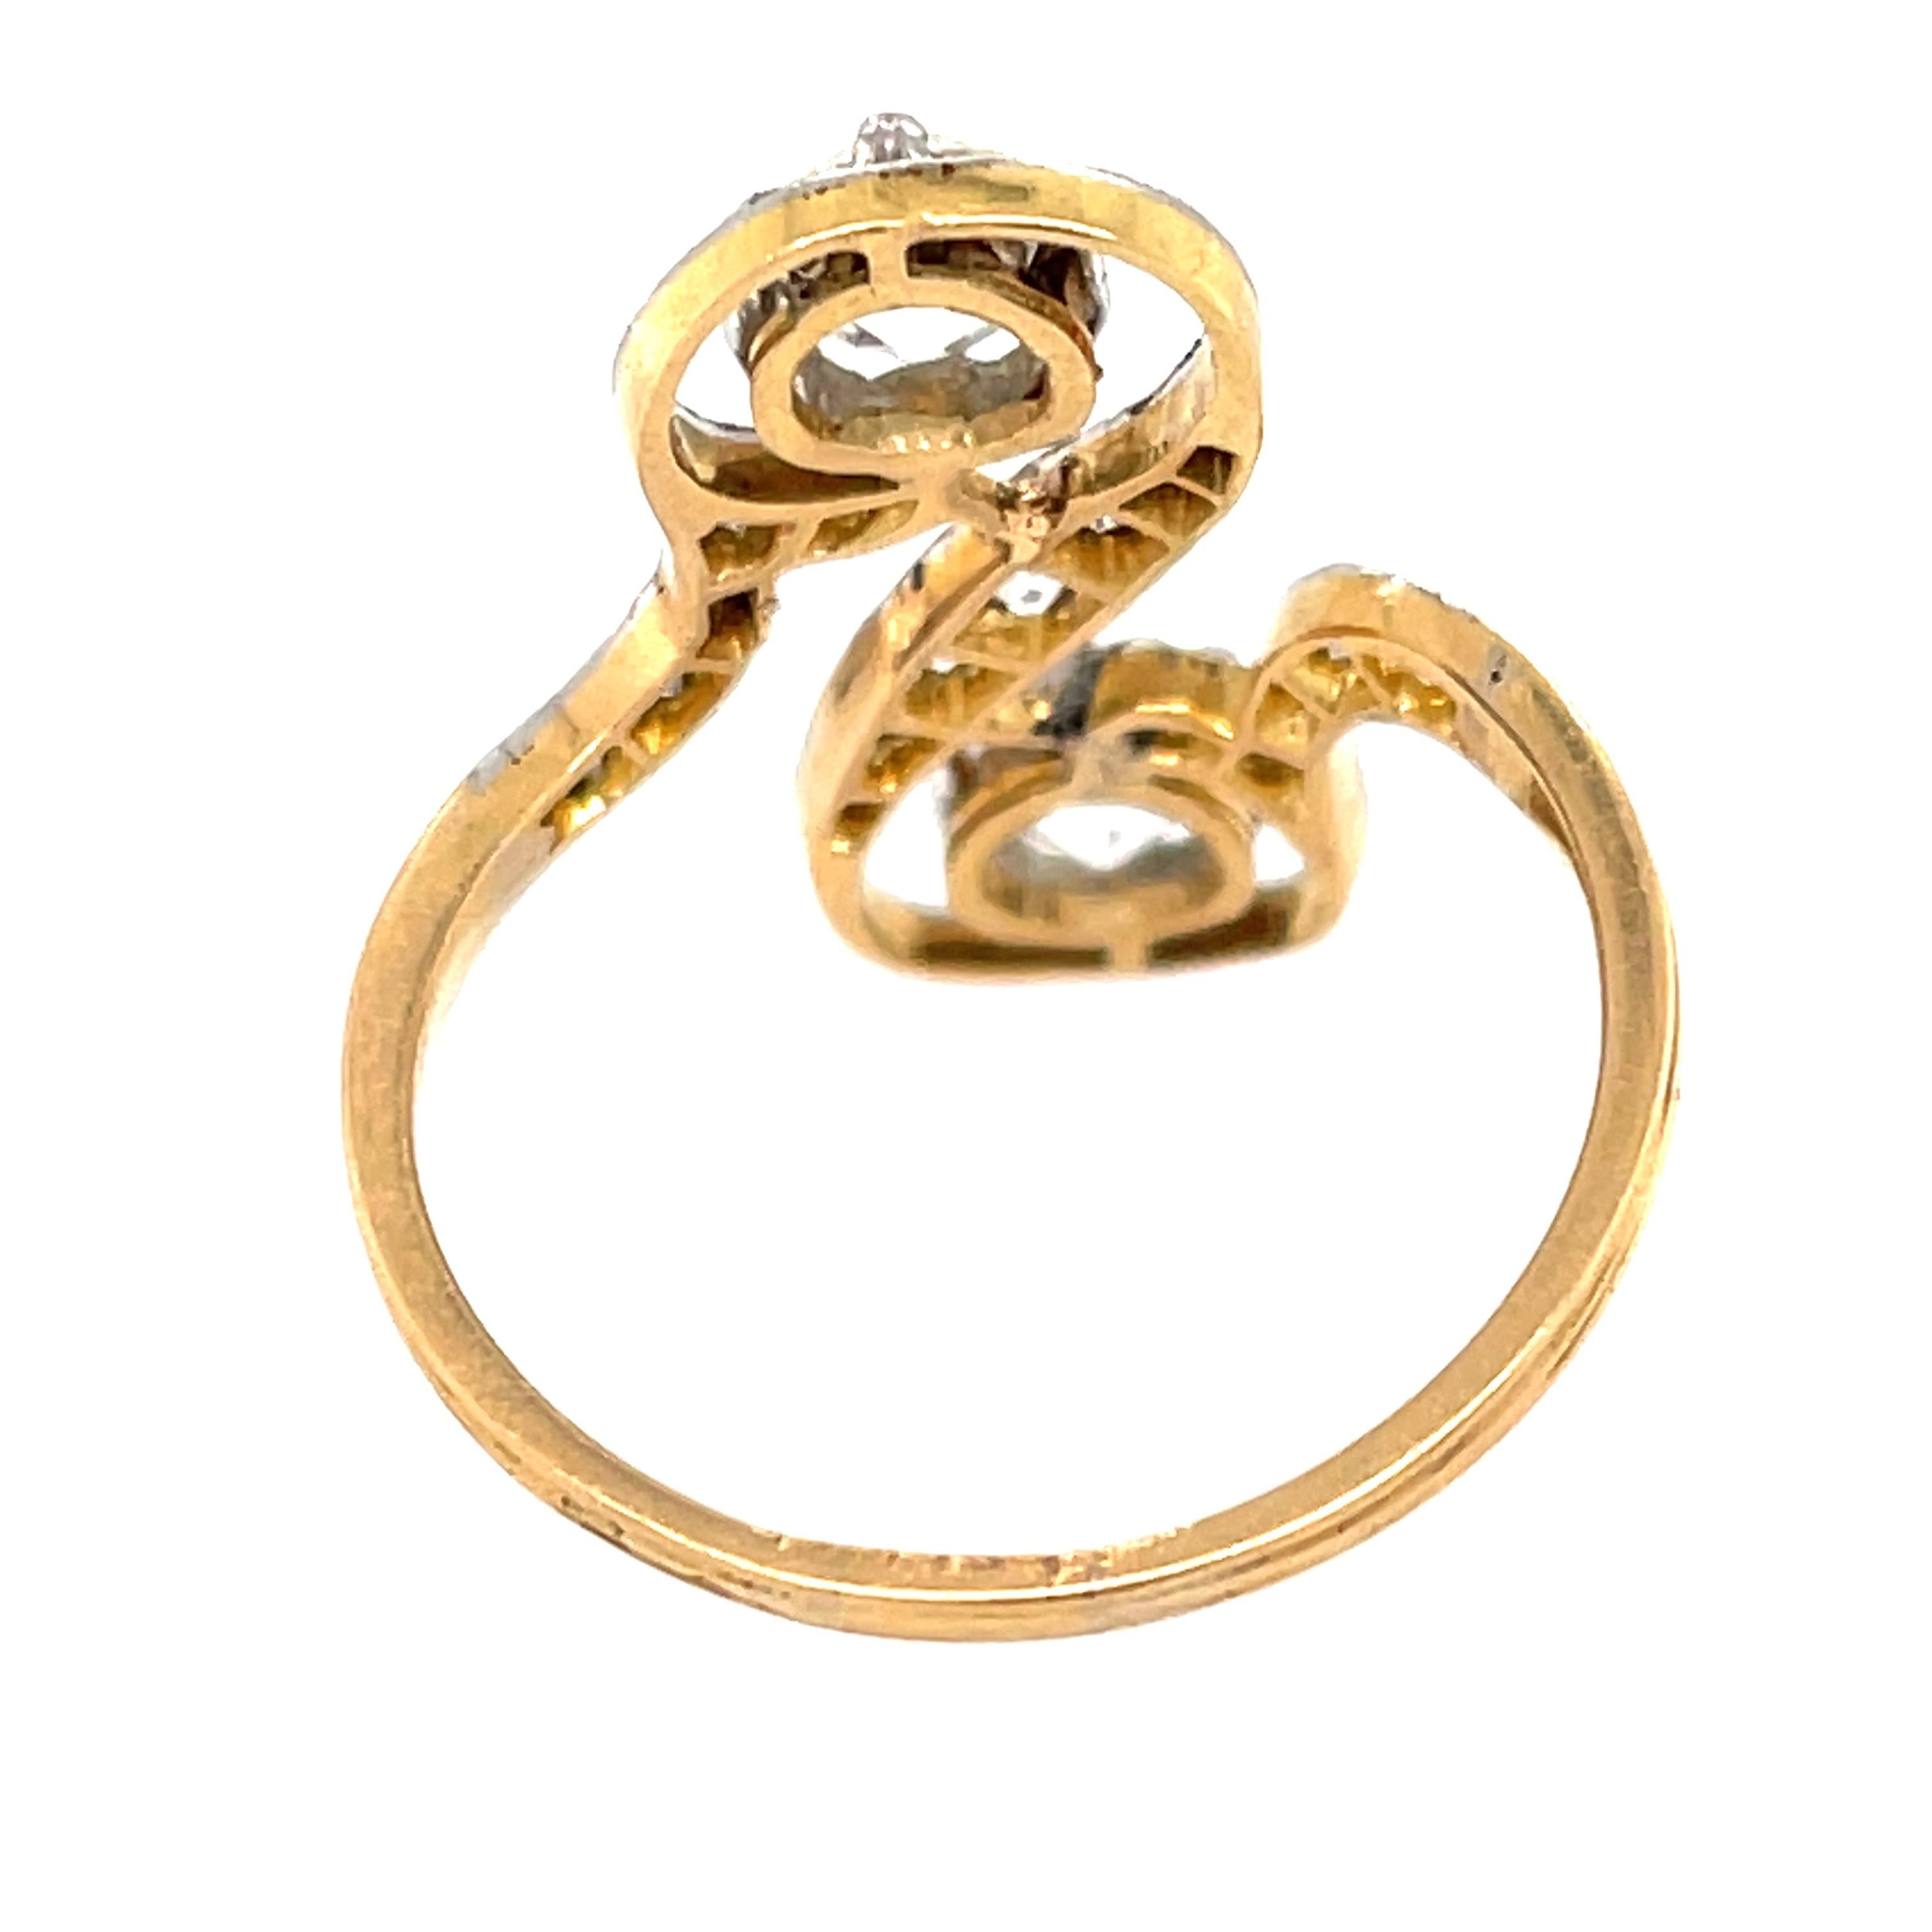 Eine stilvolle antike Edwardian Platin gekrönt 18k Gold Doppel-Diamant-Ring, um 1900. Dieser interessante Ring ist eine Anspielung auf den Bypass-Stil, allerdings mit horizontalerer Fassung. Im Mittelpunkt stehen zwei Diamanten im Old-Mine-Schliff